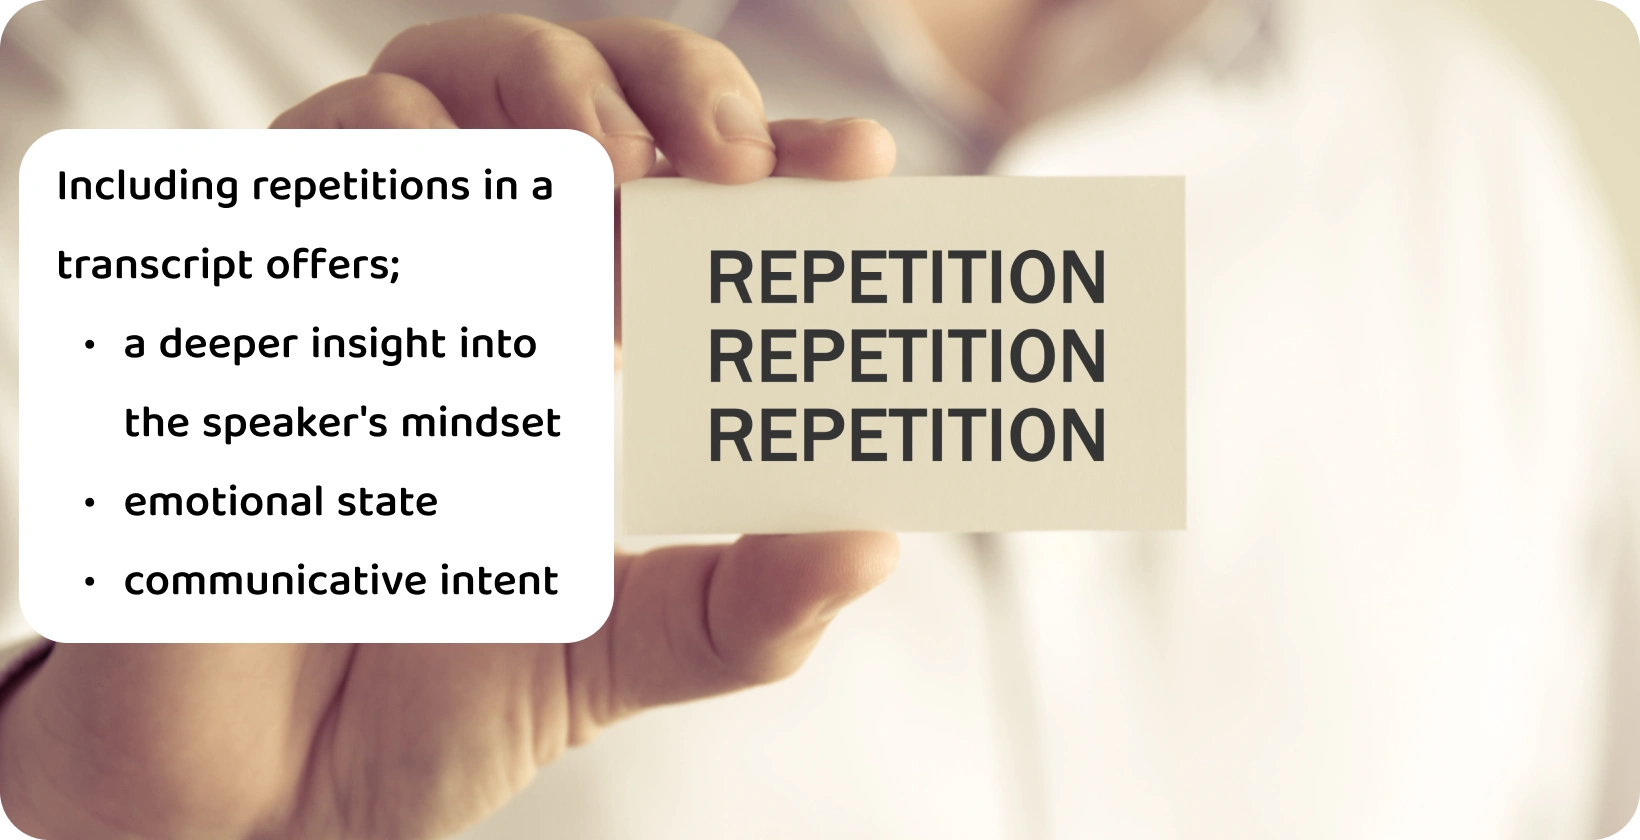 'पुनरावृत्ति' शब्द के साथ एक कार्ड पकड़े हुए हाथ का क्लोज-अप, एक verbatim प्रतिलेख में पुनरावृत्ति की अवधारणा को दर्शाता है।